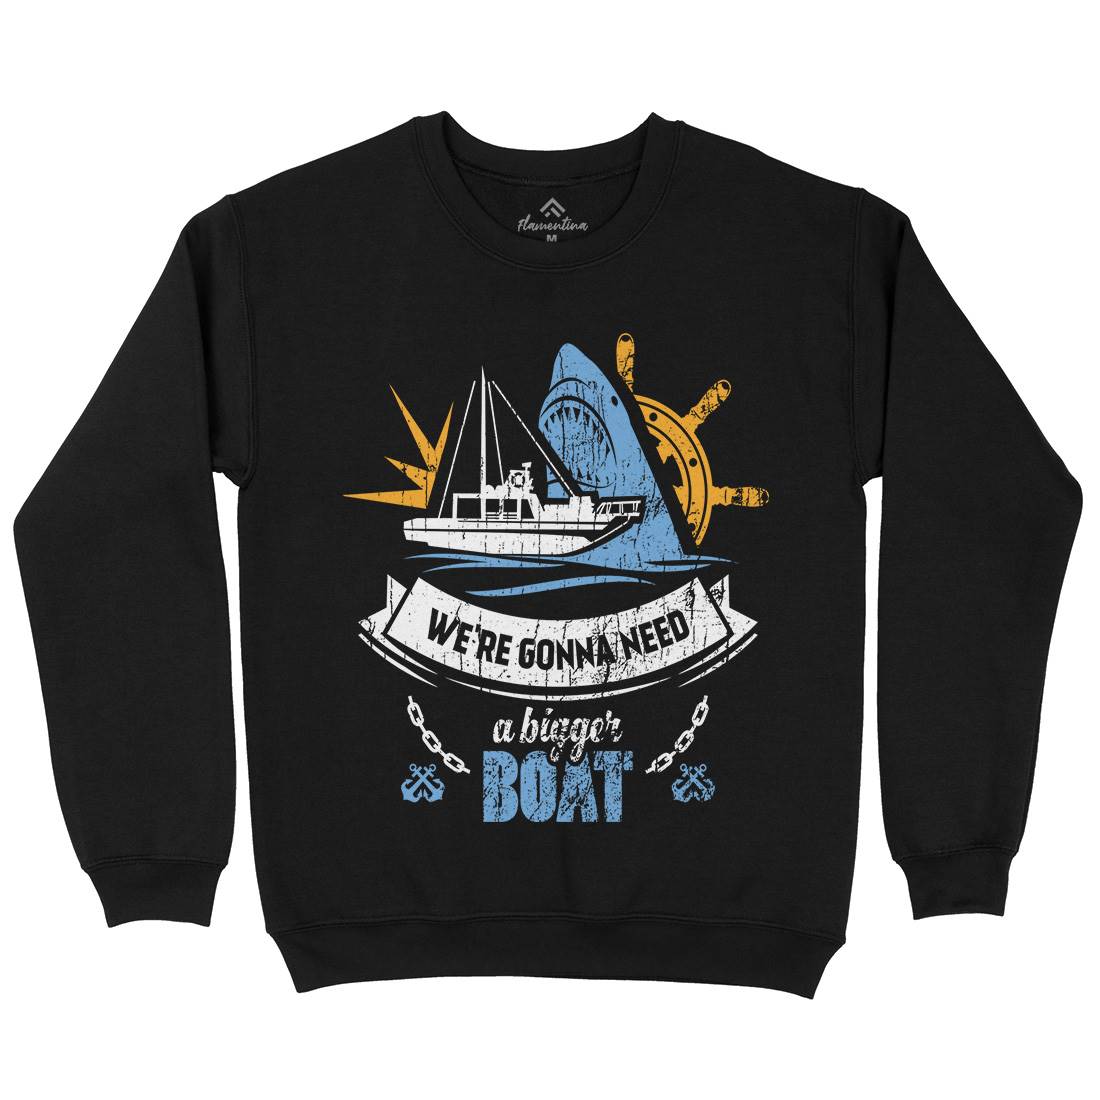 Bigger Boat Kids Crew Neck Sweatshirt Navy D307